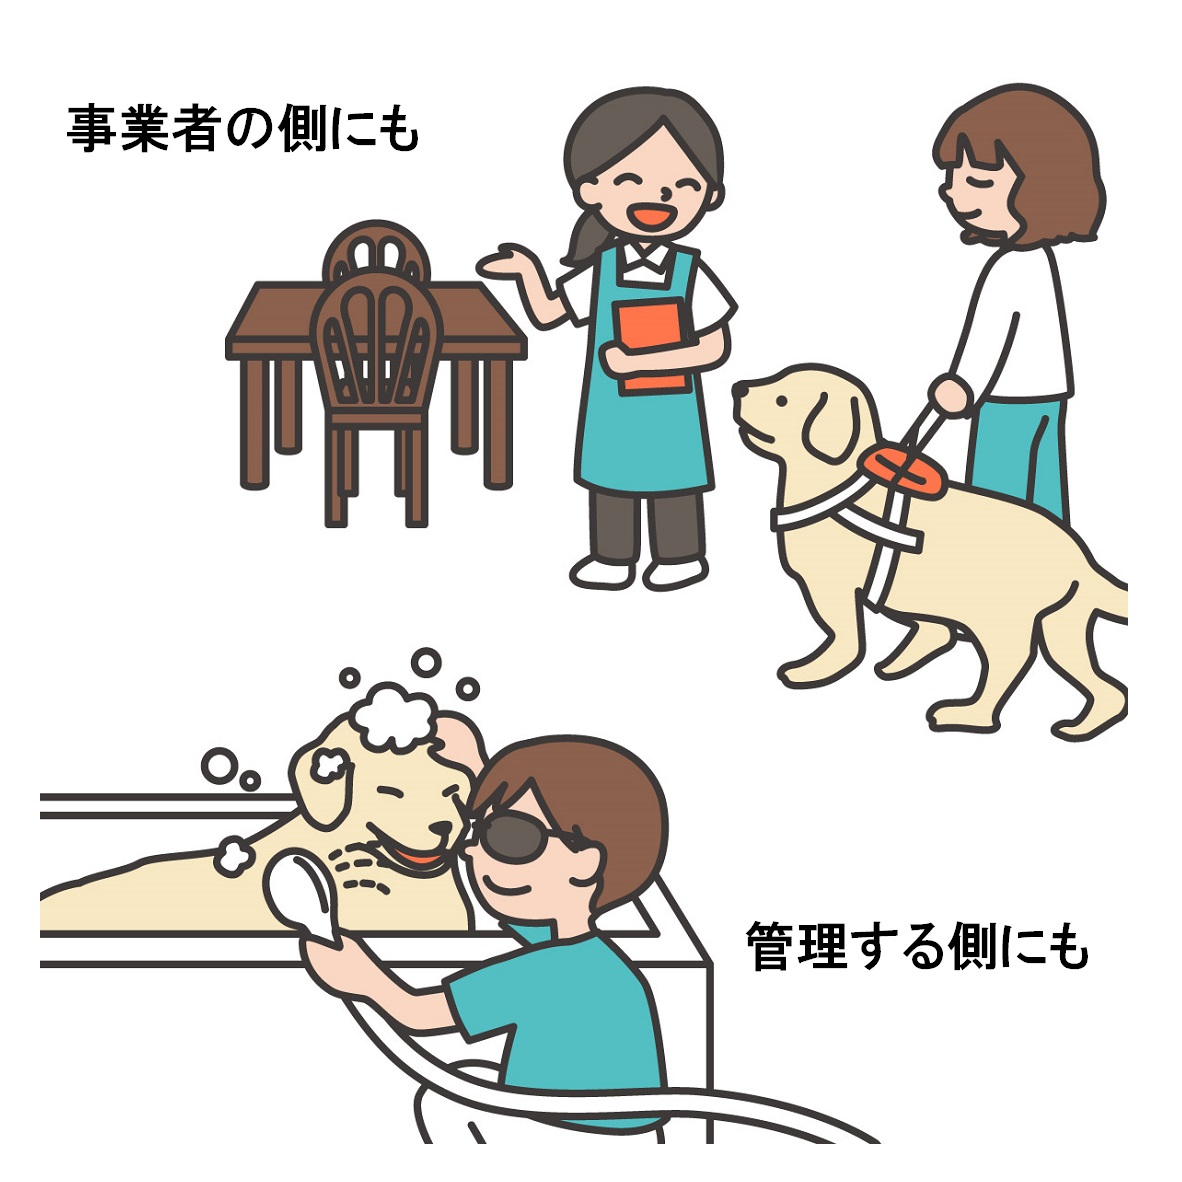 盲導犬同伴の女性を笑顔で接客する飲食店の店員さんと盲導犬をシャンプーしている視覚障害の男性。テキスト：事業者の側にも／管理する側にも